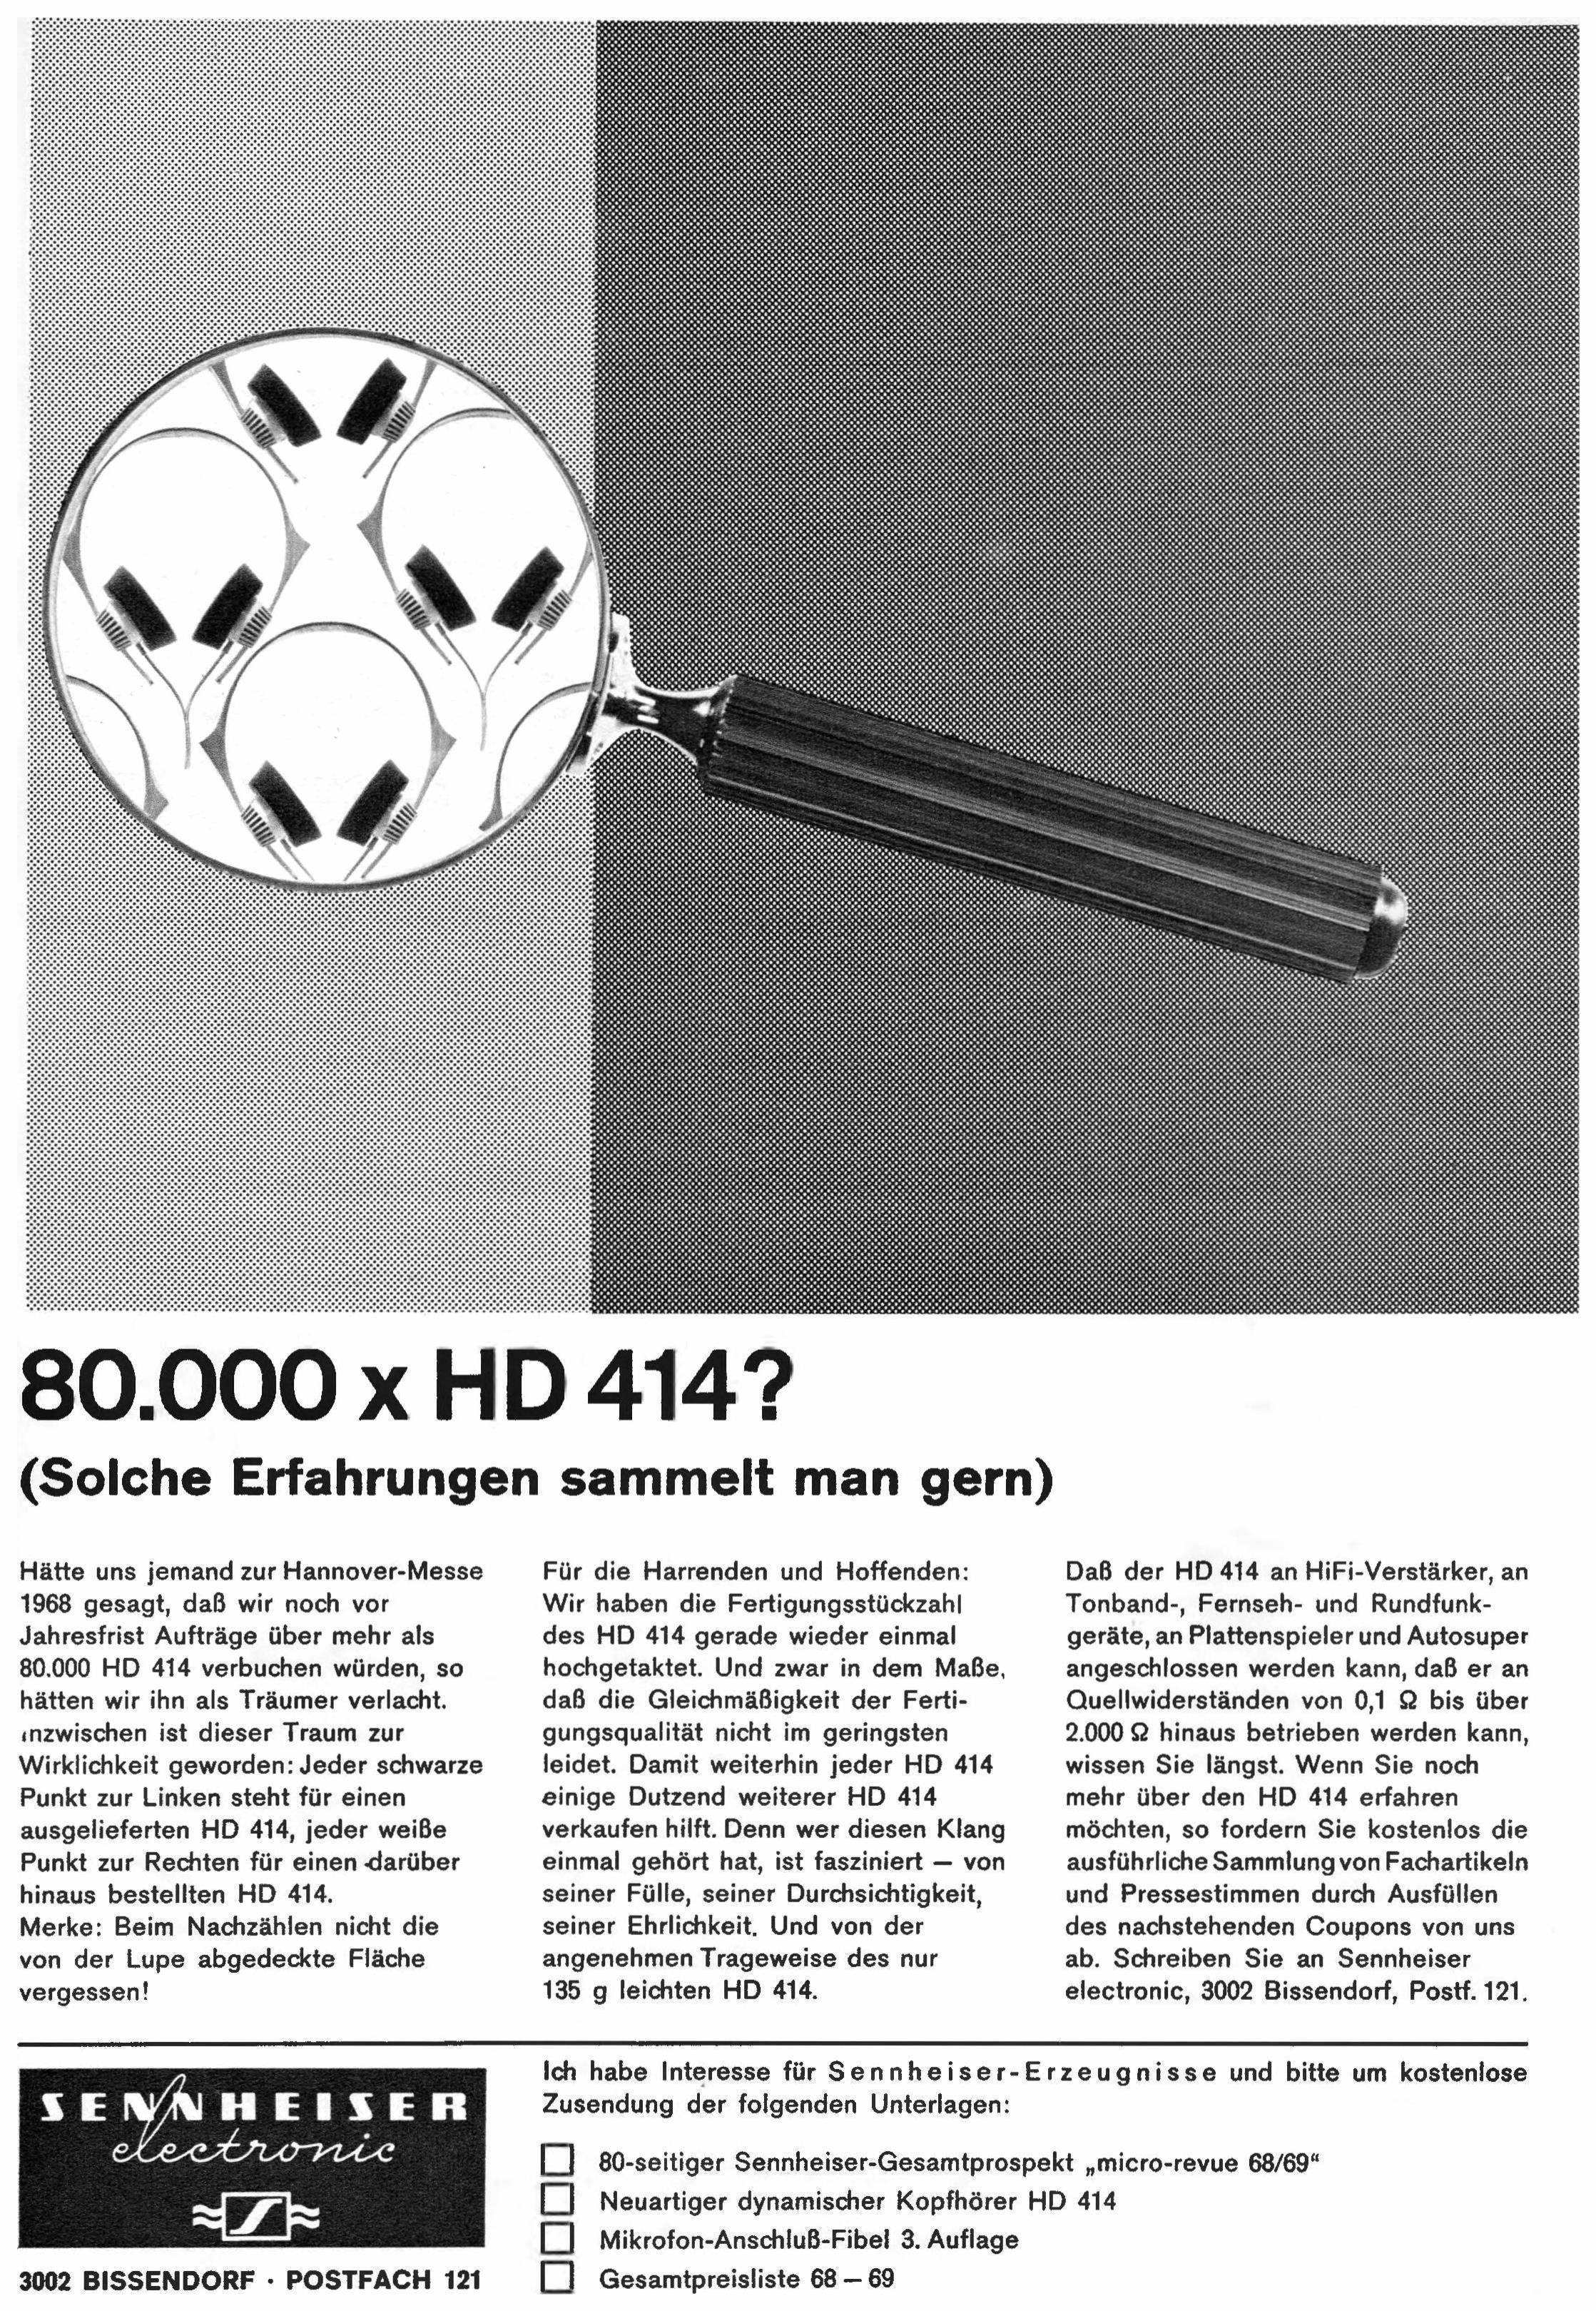 Sennheiser 1969 01.jpg